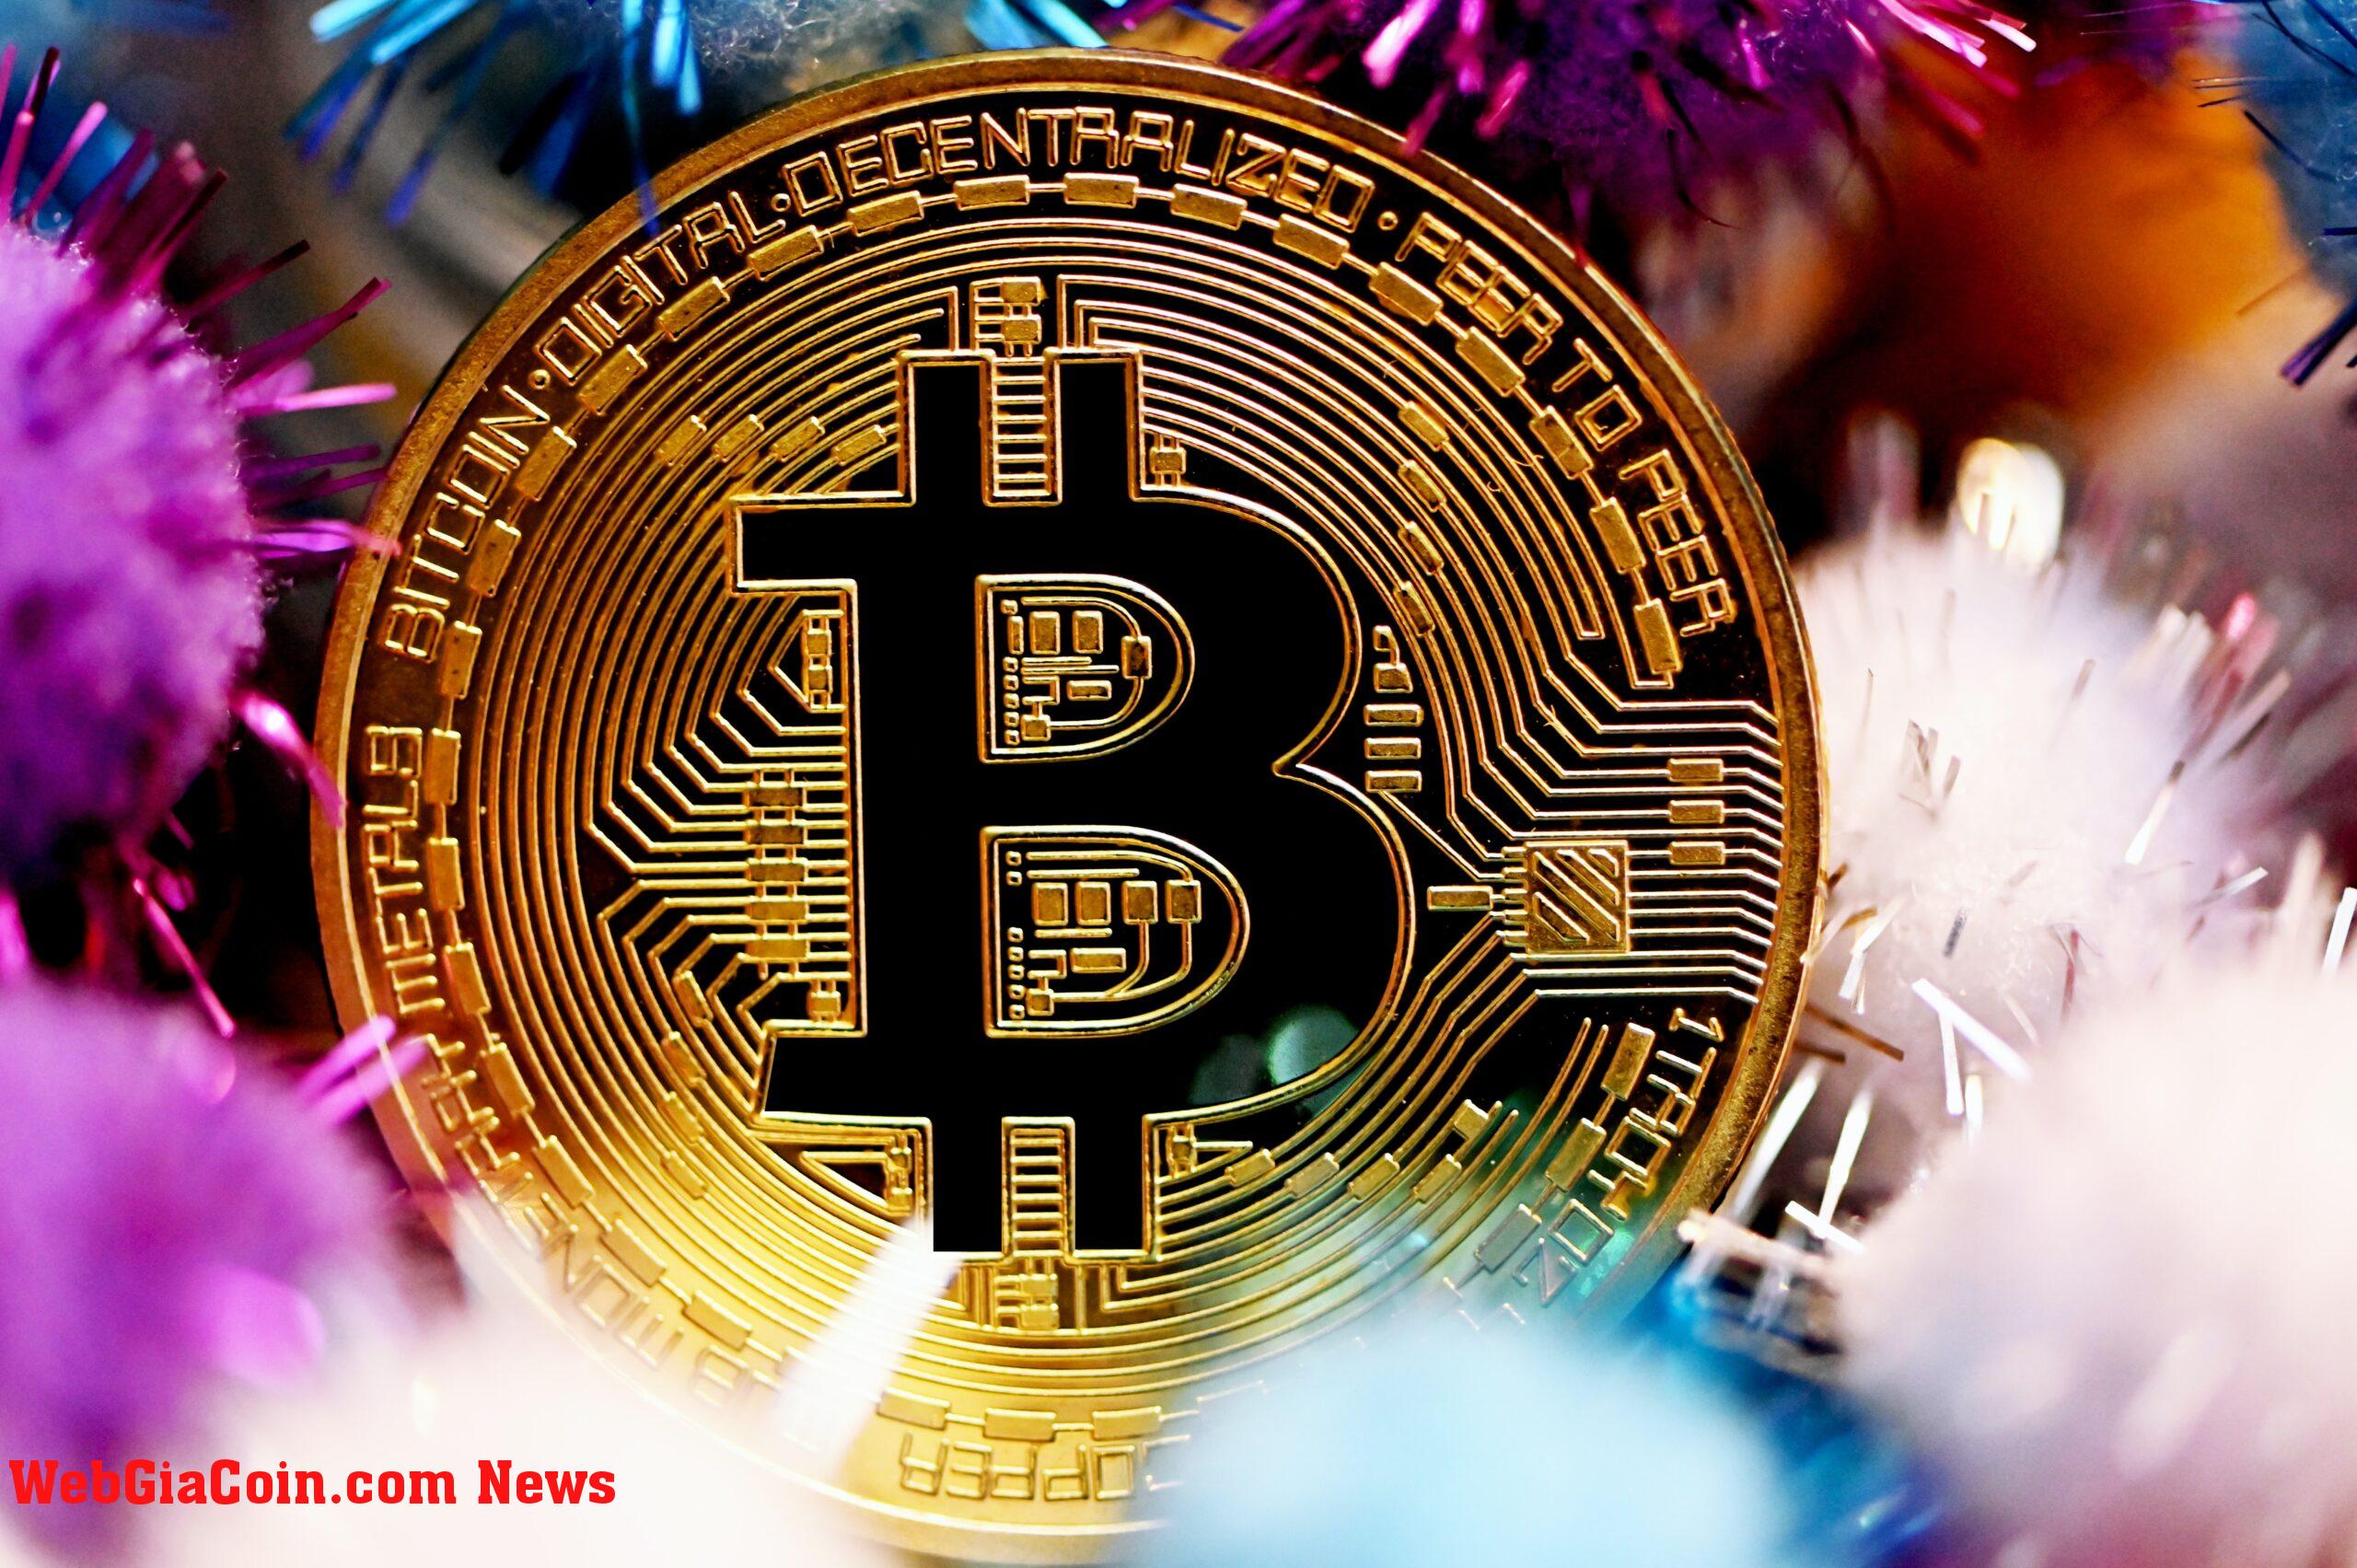 GlassNode: Bitcoin hiện đang trong giai đoạn chuyển tiếp giảm giá sang tăng giá